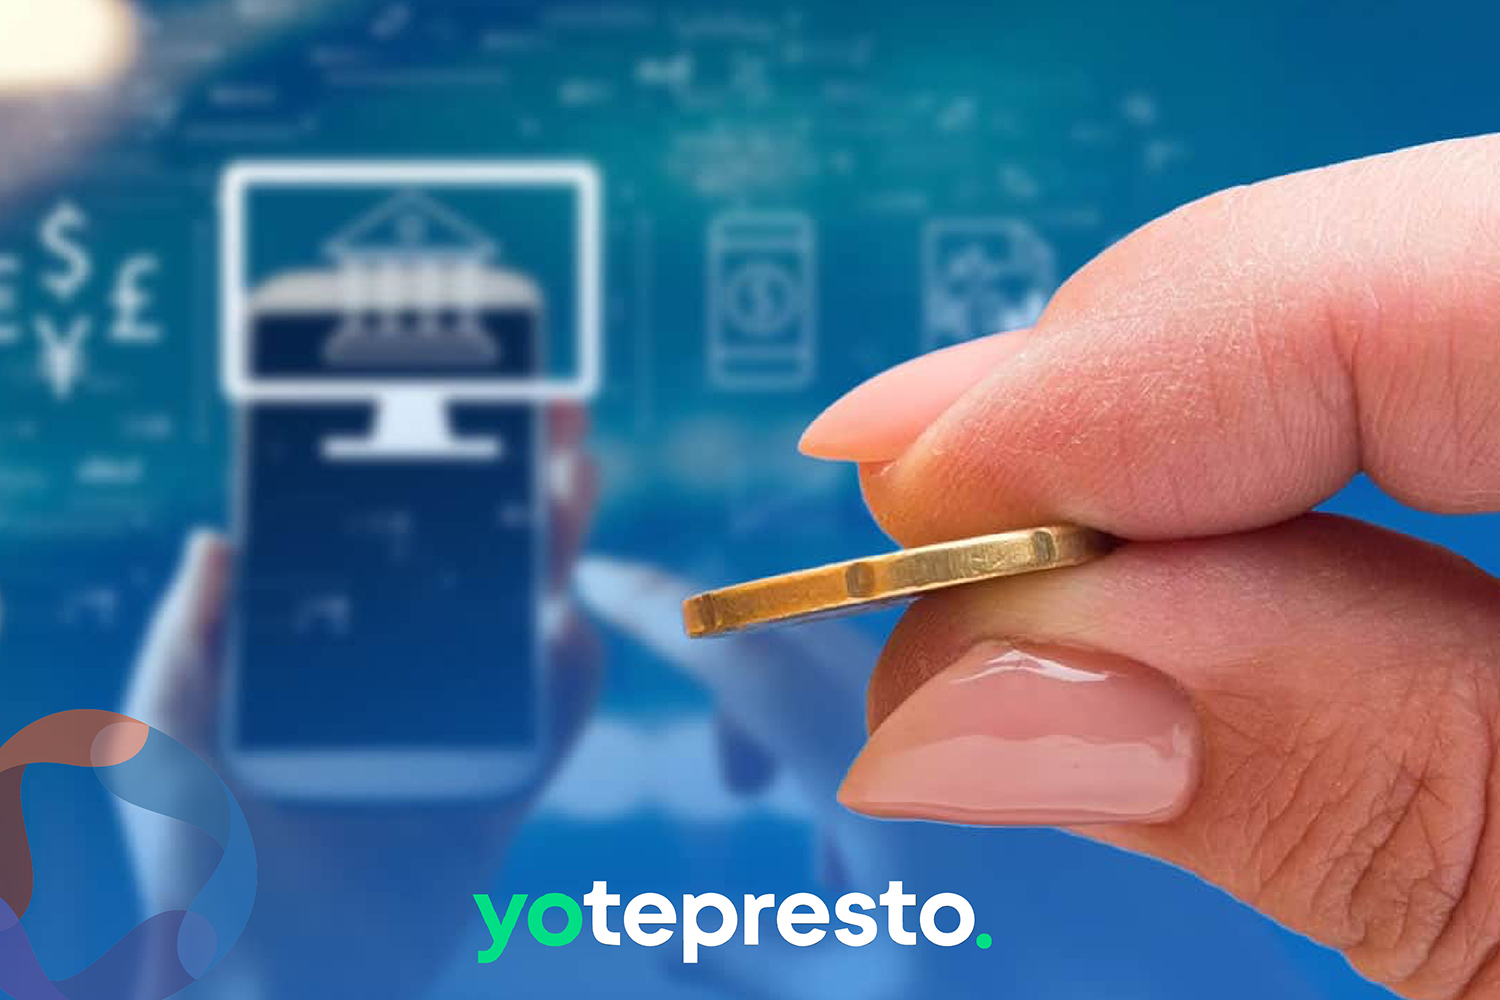 Fintech de crowdfunding incrementaron en 32% su colocación de crédito; YotePresto encabeza al sector